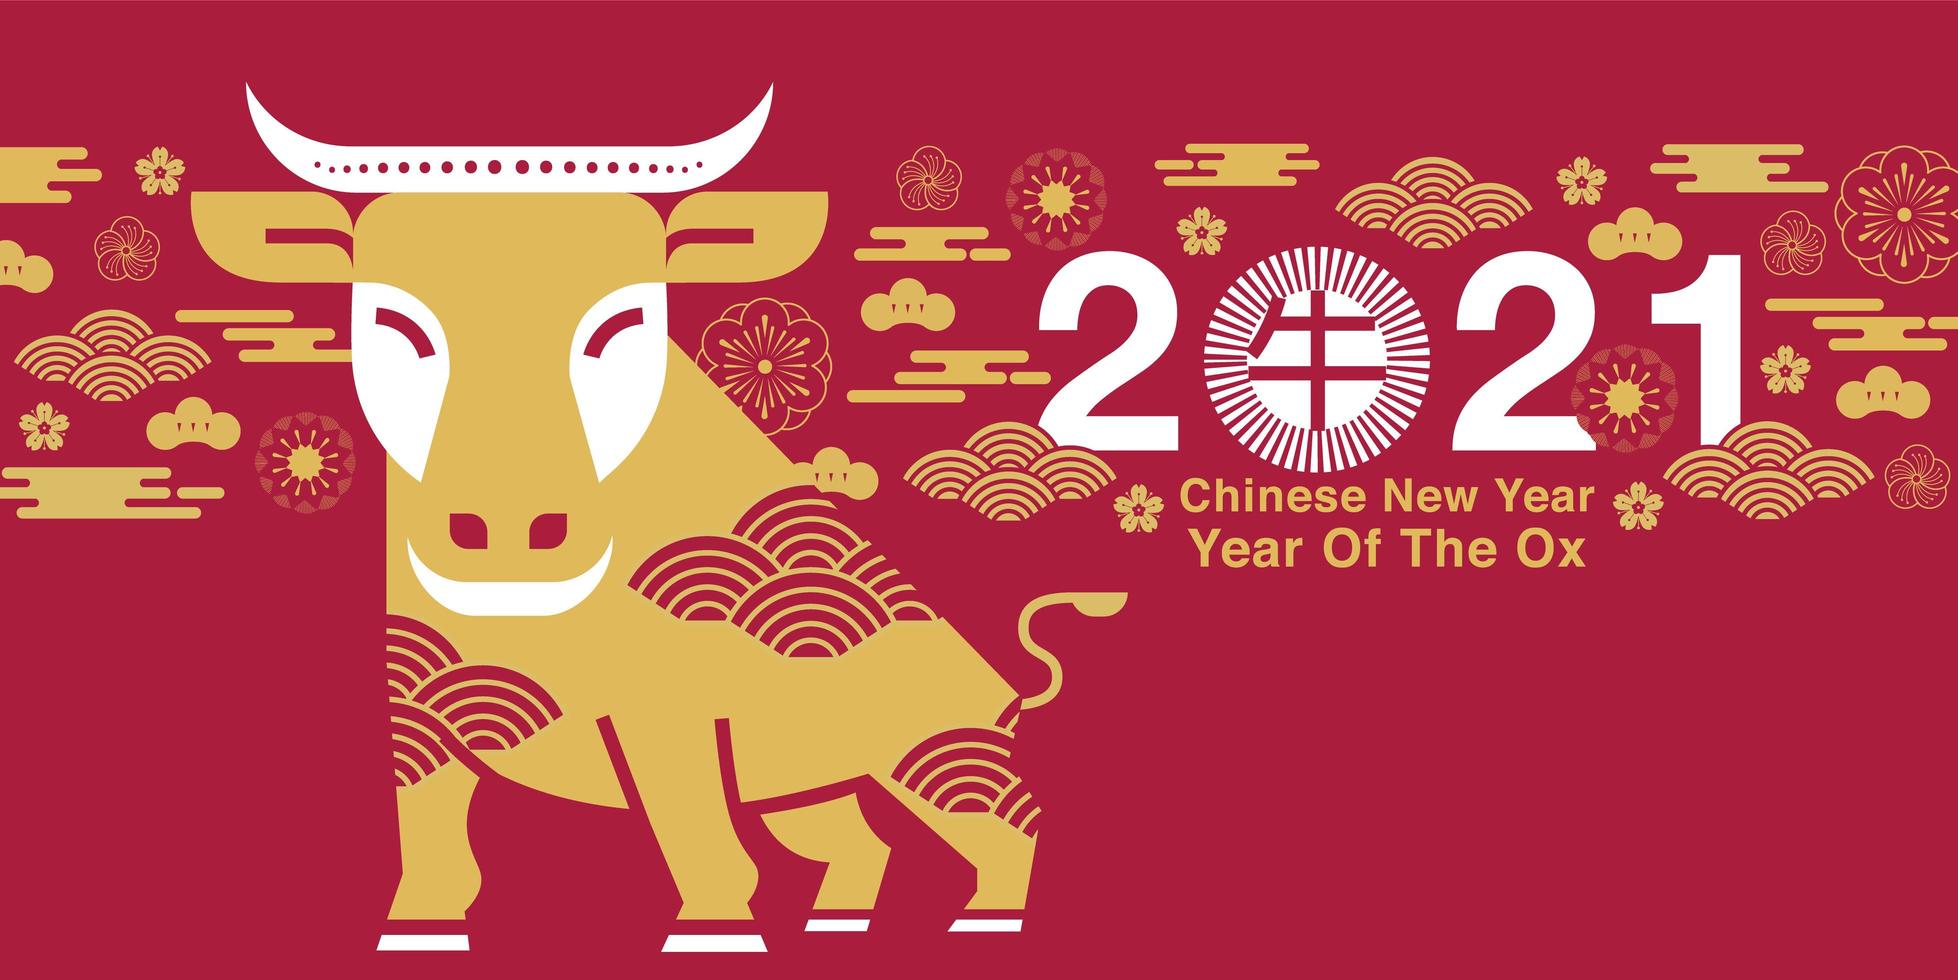 ano novo chinês 2021 ano do design do boi vetor